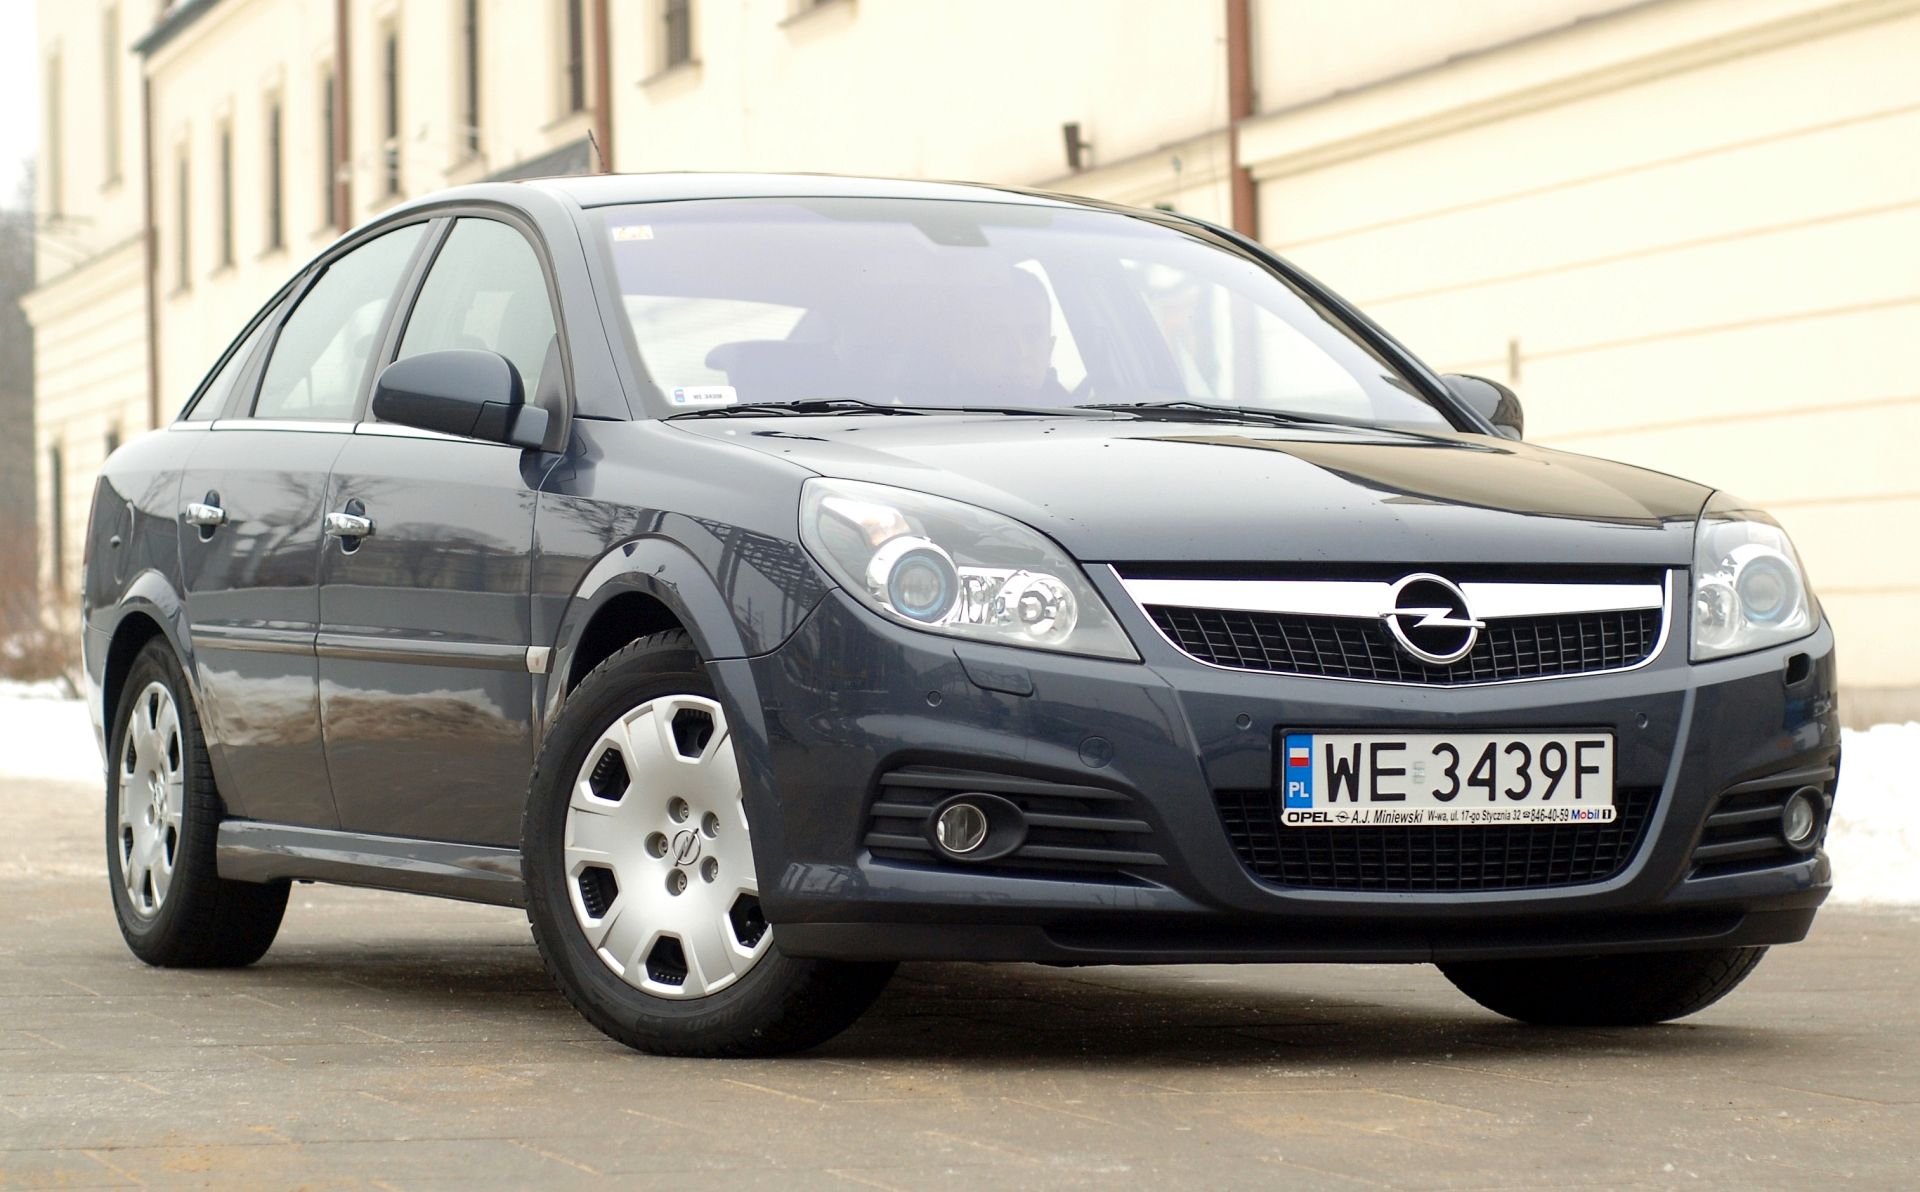 Żarówki Opel Vectra (C) jakie potrzebne do wymiany?